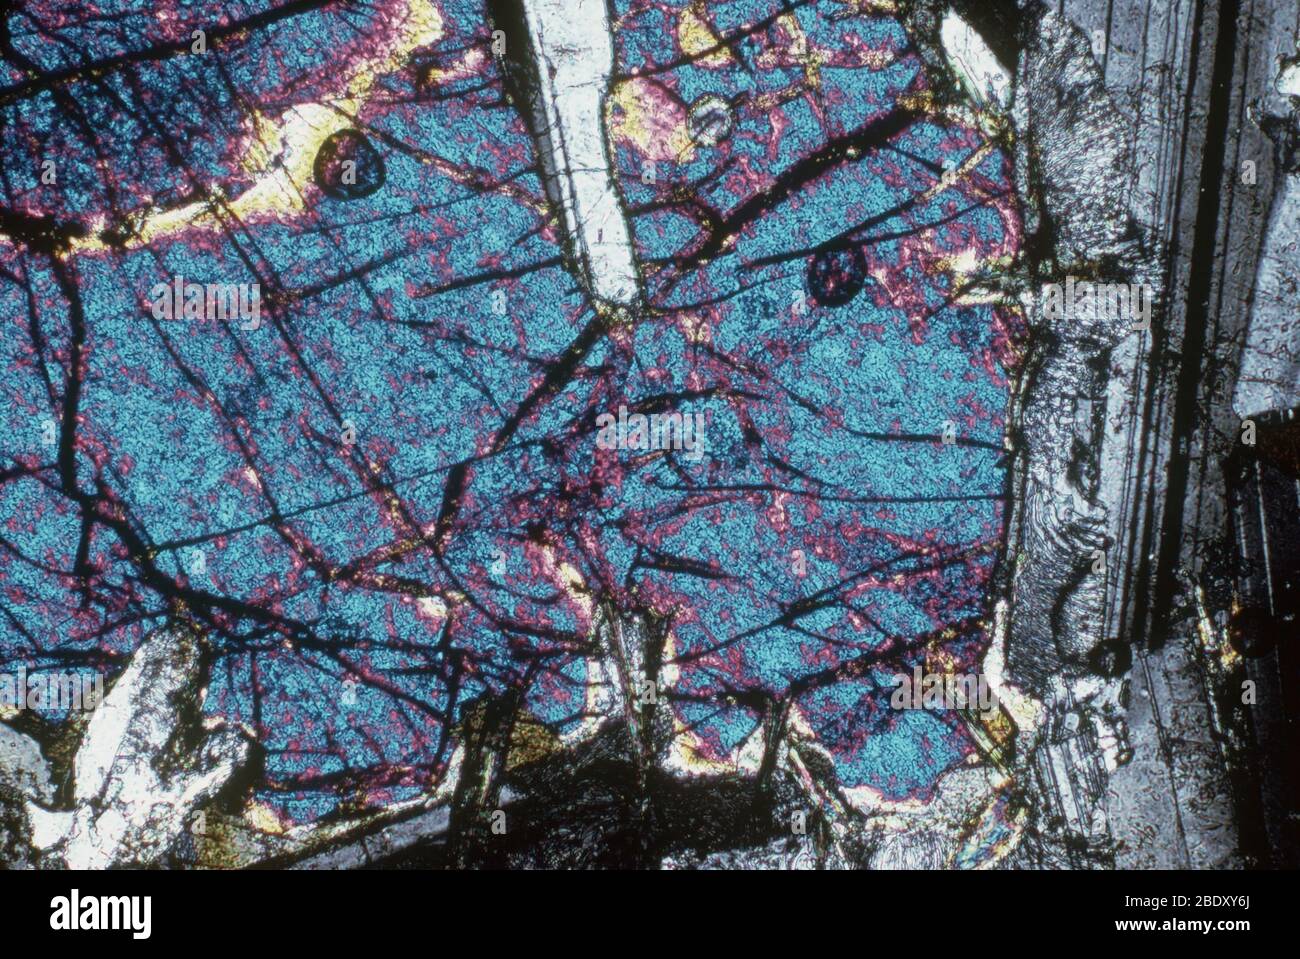 Olivin Gabbro. Gabbro ist eine Gruppe von dunklen, natürlich-körnigen intrusiven mafischen igneous Gesteinen, die chemisch Basalt entsprechen. Wenn große Mengen des Minerals Olivin (auch Peridot genannt) vorhanden sind, wird es Olivin Gabbro genannt. Stockfoto